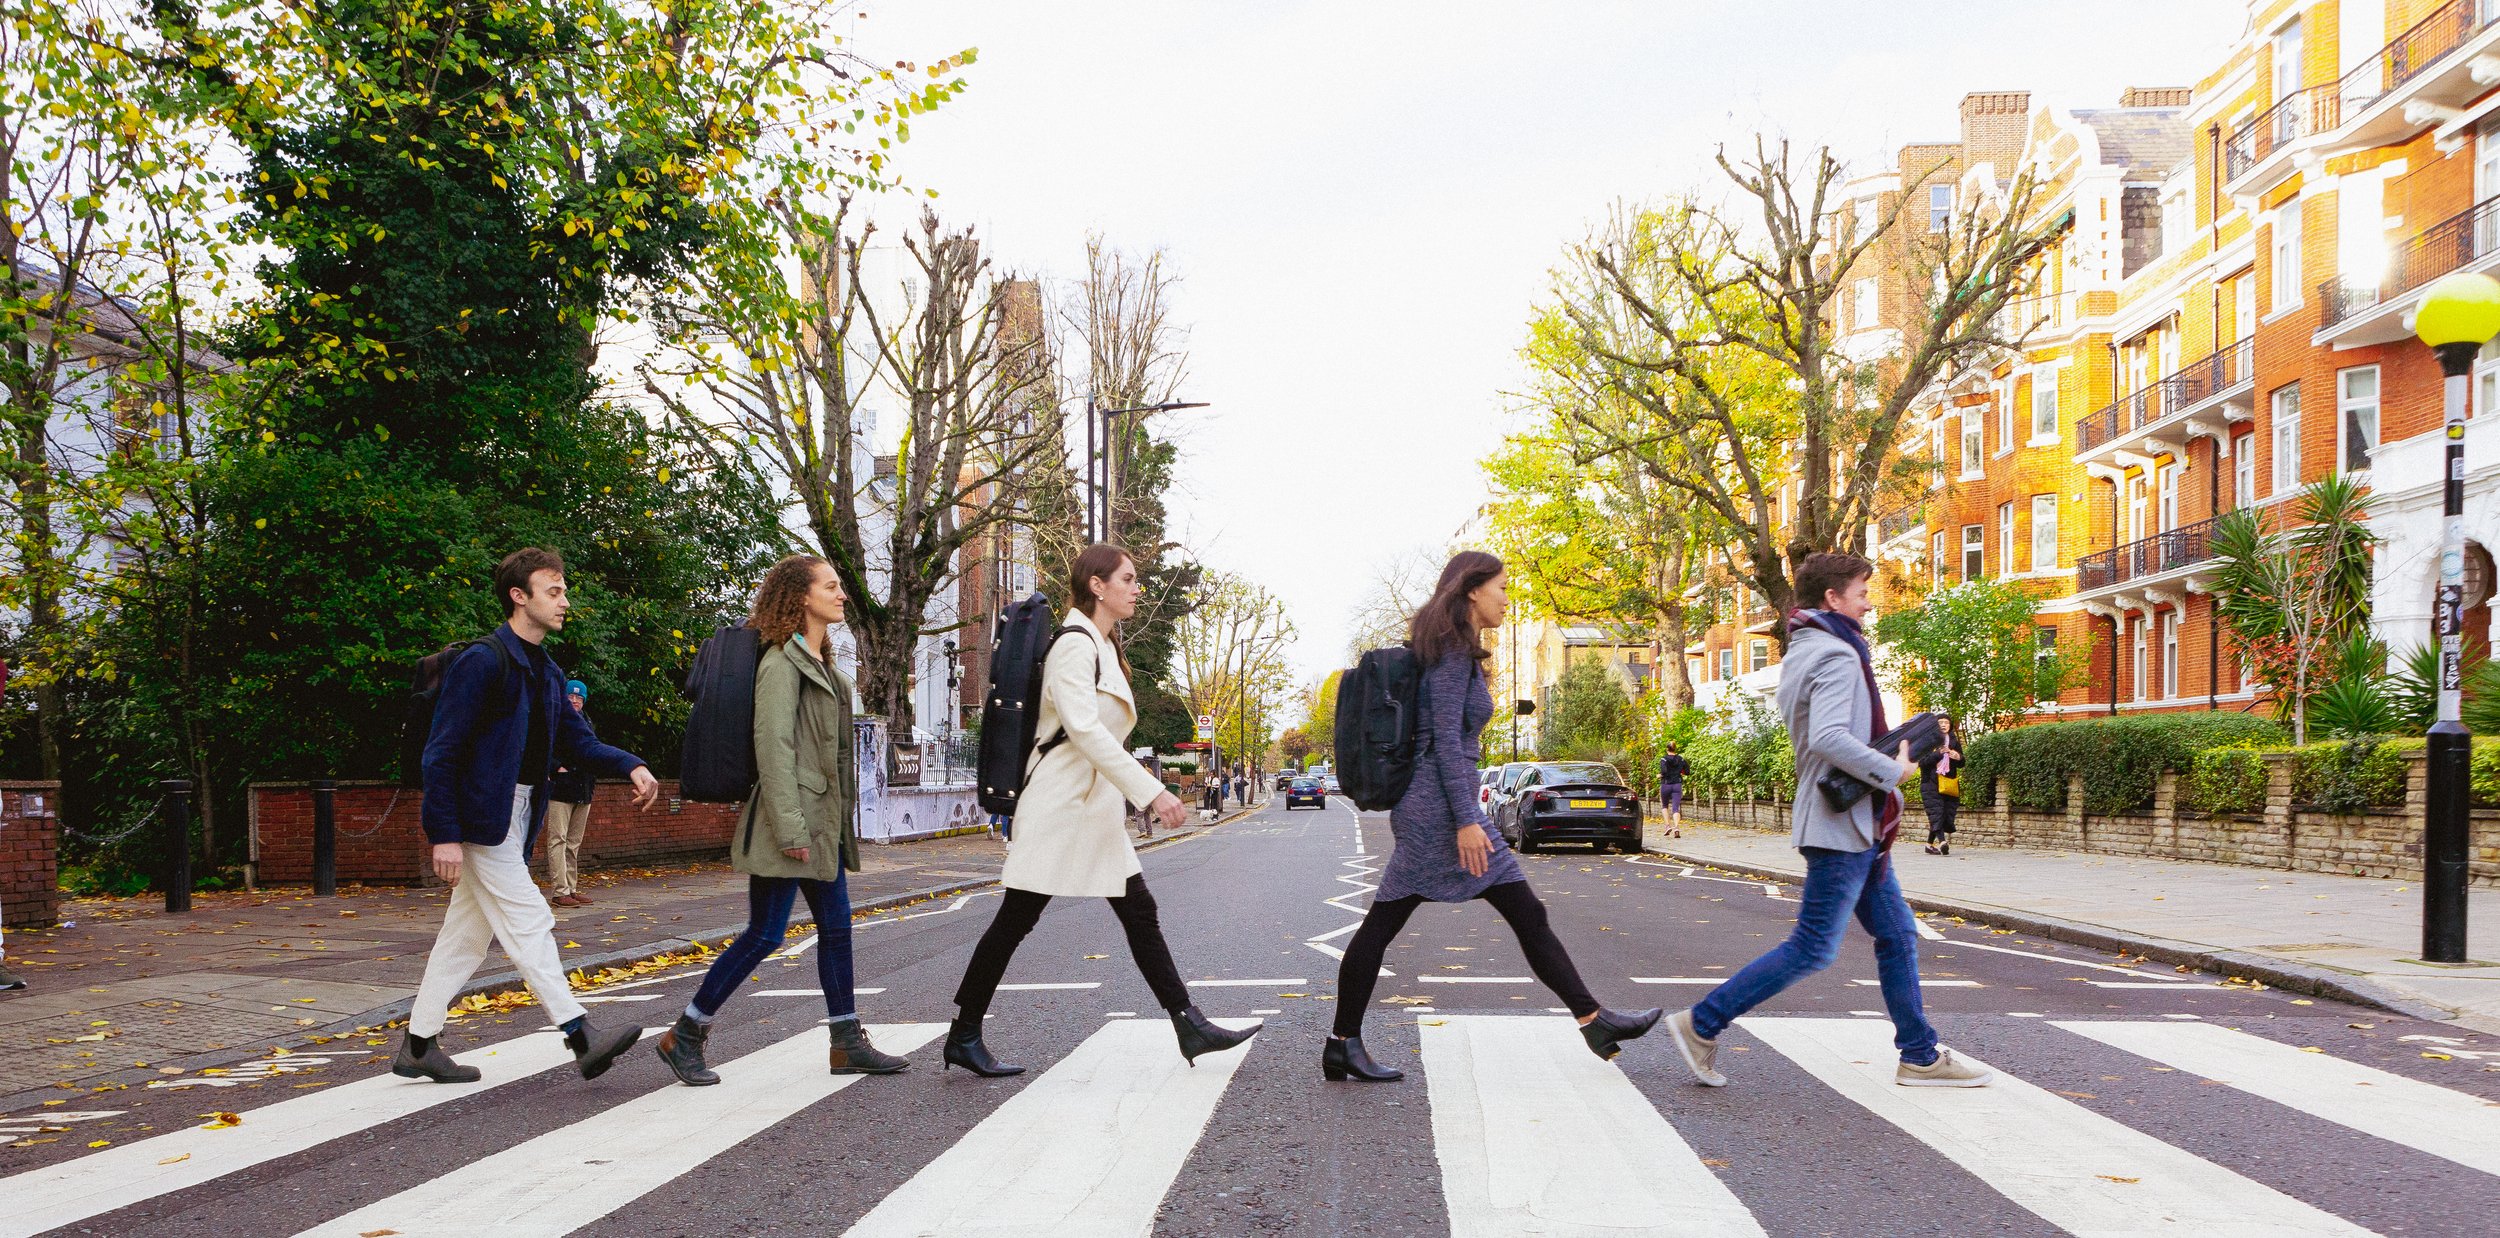 WindSync 7 at Abbey Road credit Laura Garcia.jpg